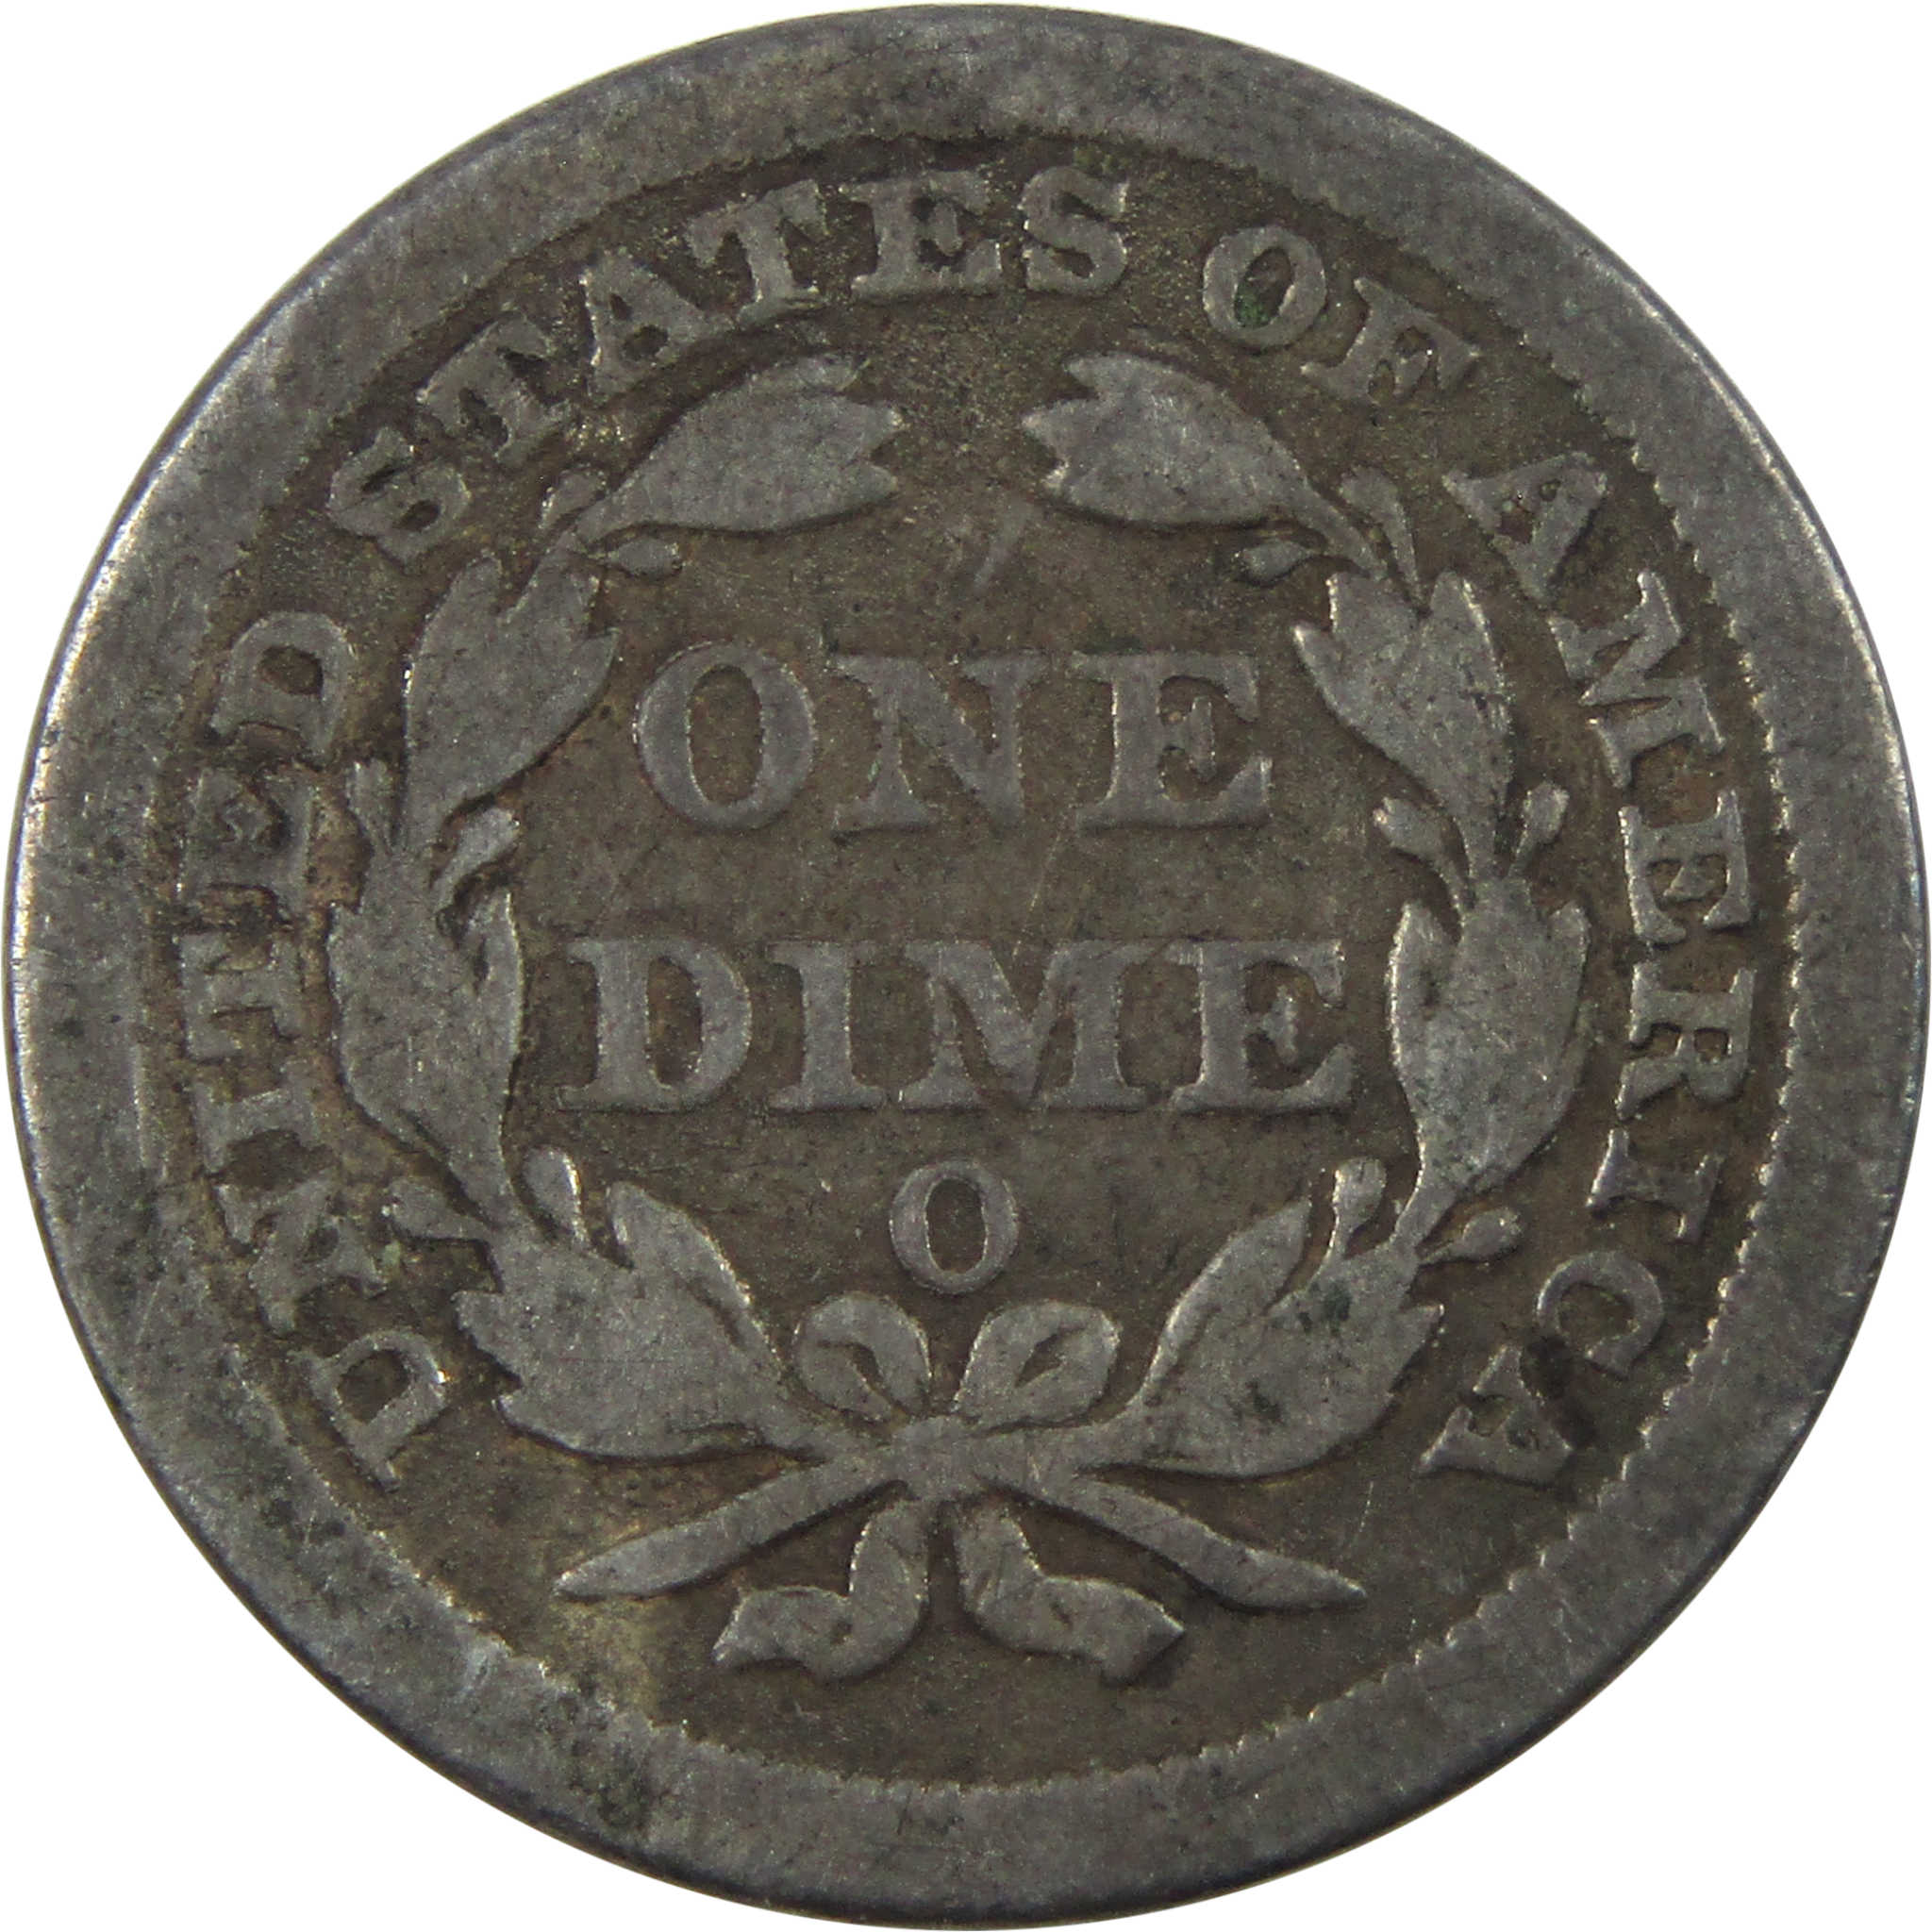 1856 O Seated Liberty Dime F Fine Silver 10c Coin SKU:I14060